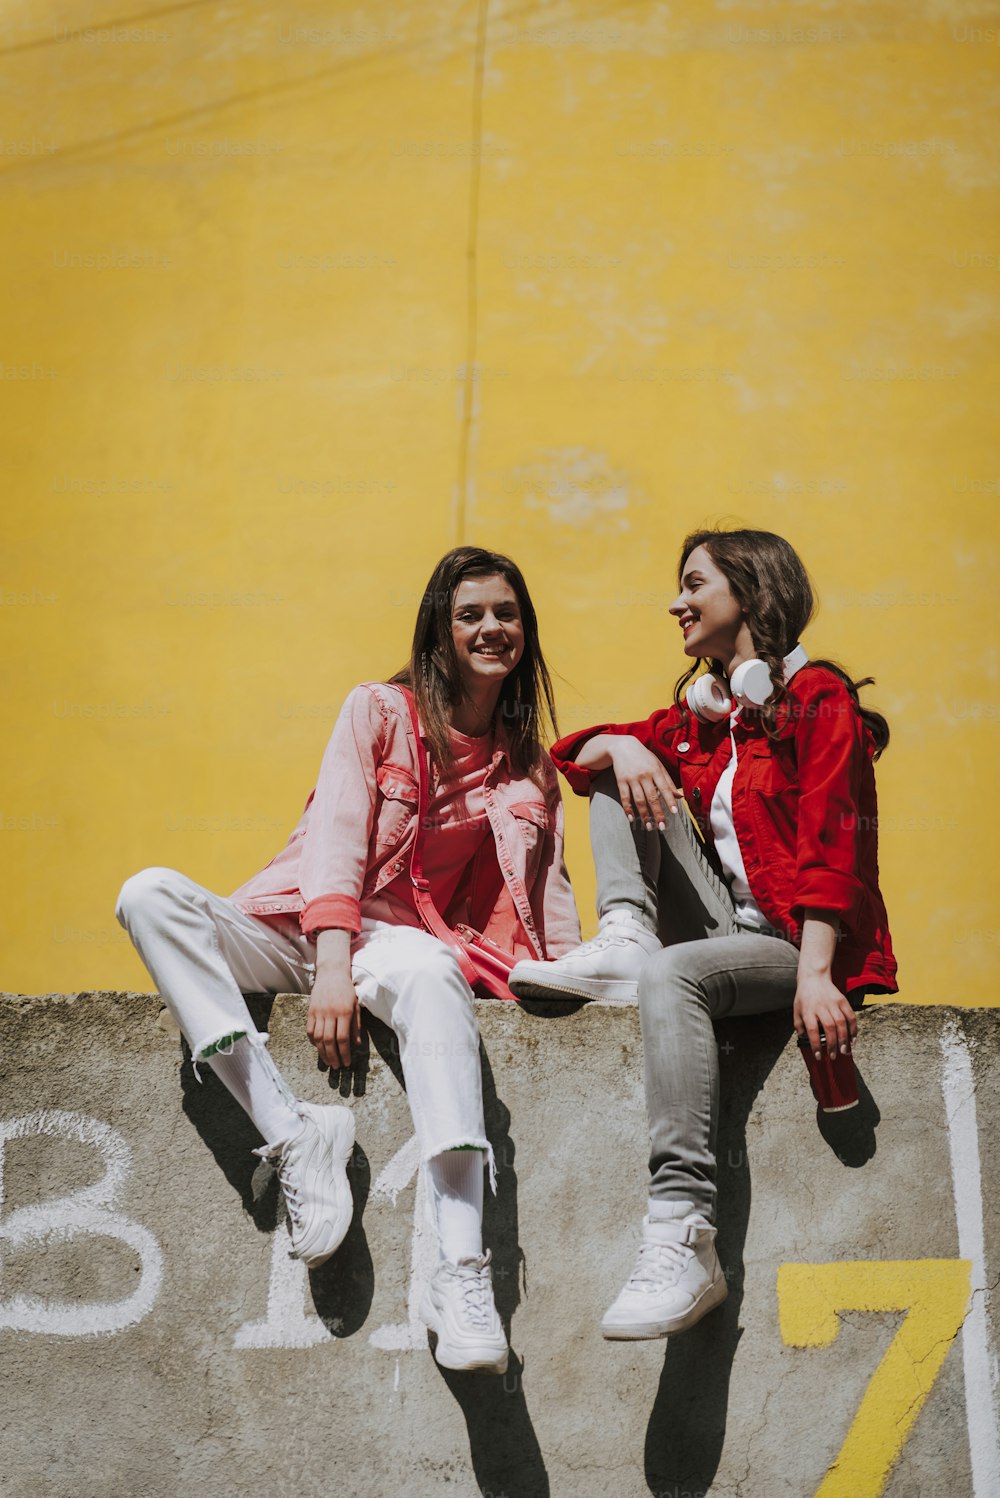 Concetto di stile di vita urbano. Ritratto a figura intera di due giovani donne hipster sorridenti felici che riposano insieme sulla parete del parapetto